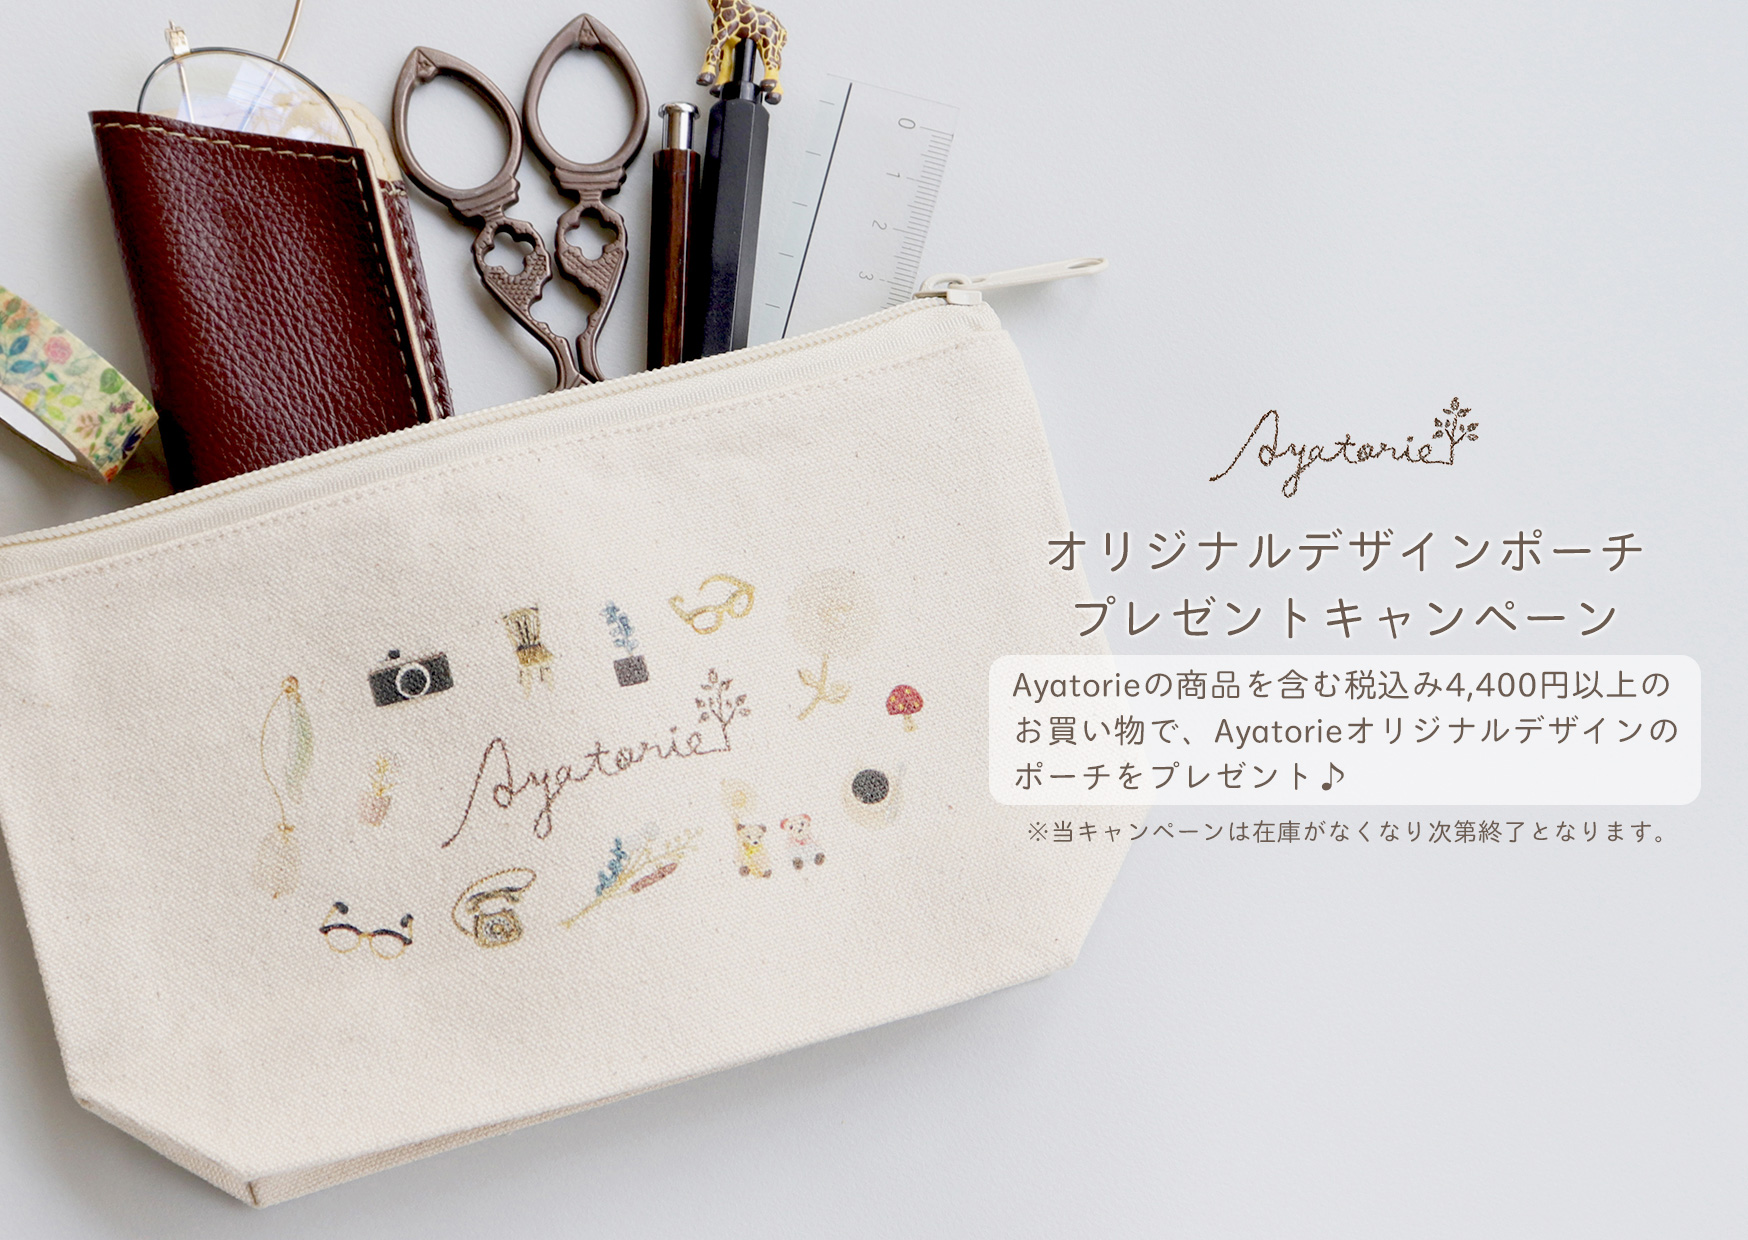 【Ayatorie】オリジナルデザインポーチプレゼントキャンペーン